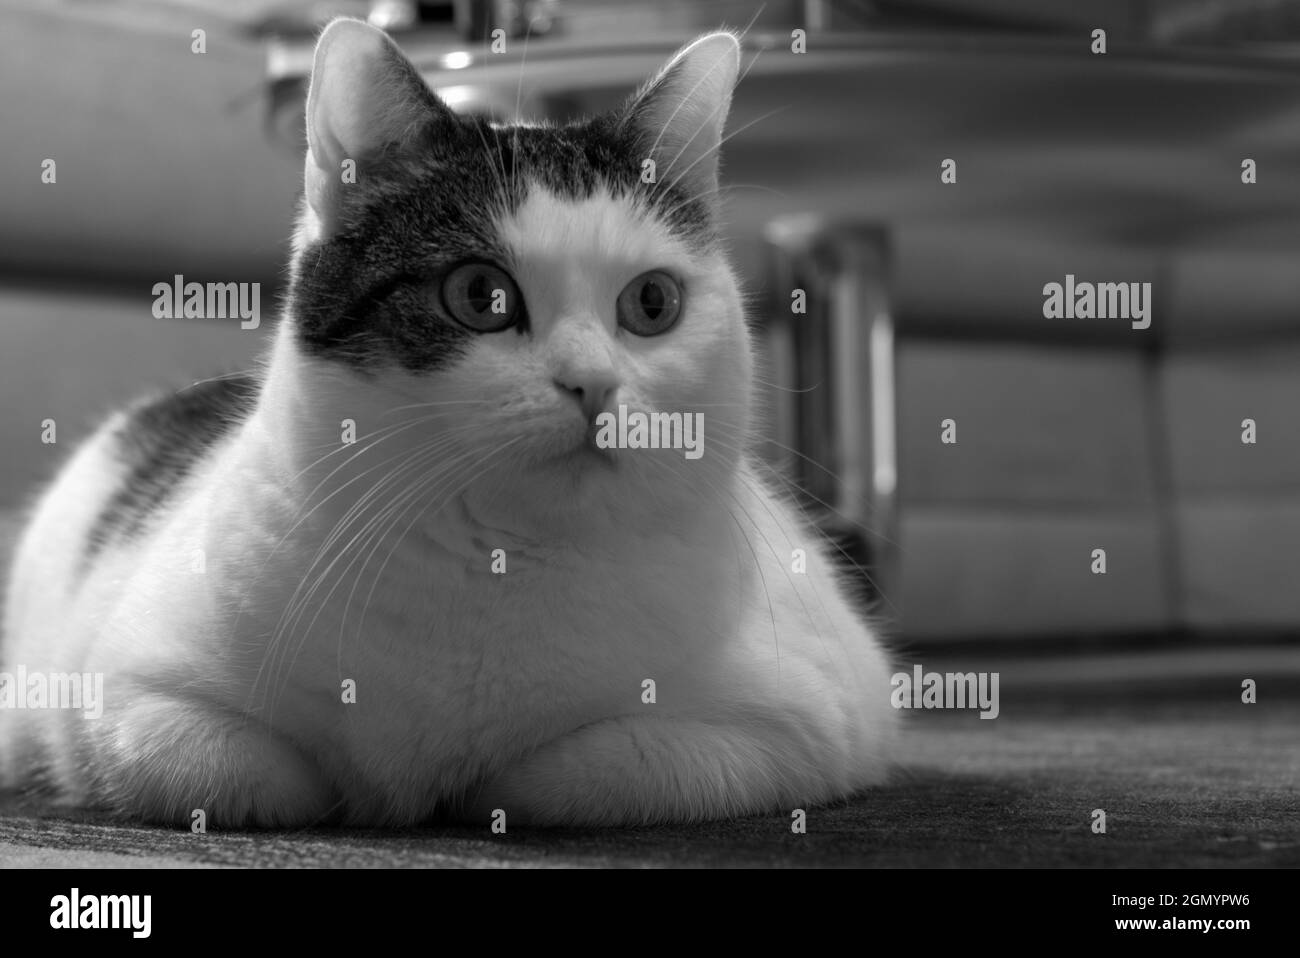 Un gato se encuentra relajado en una alfombra y mira a la cámara Foto de stock